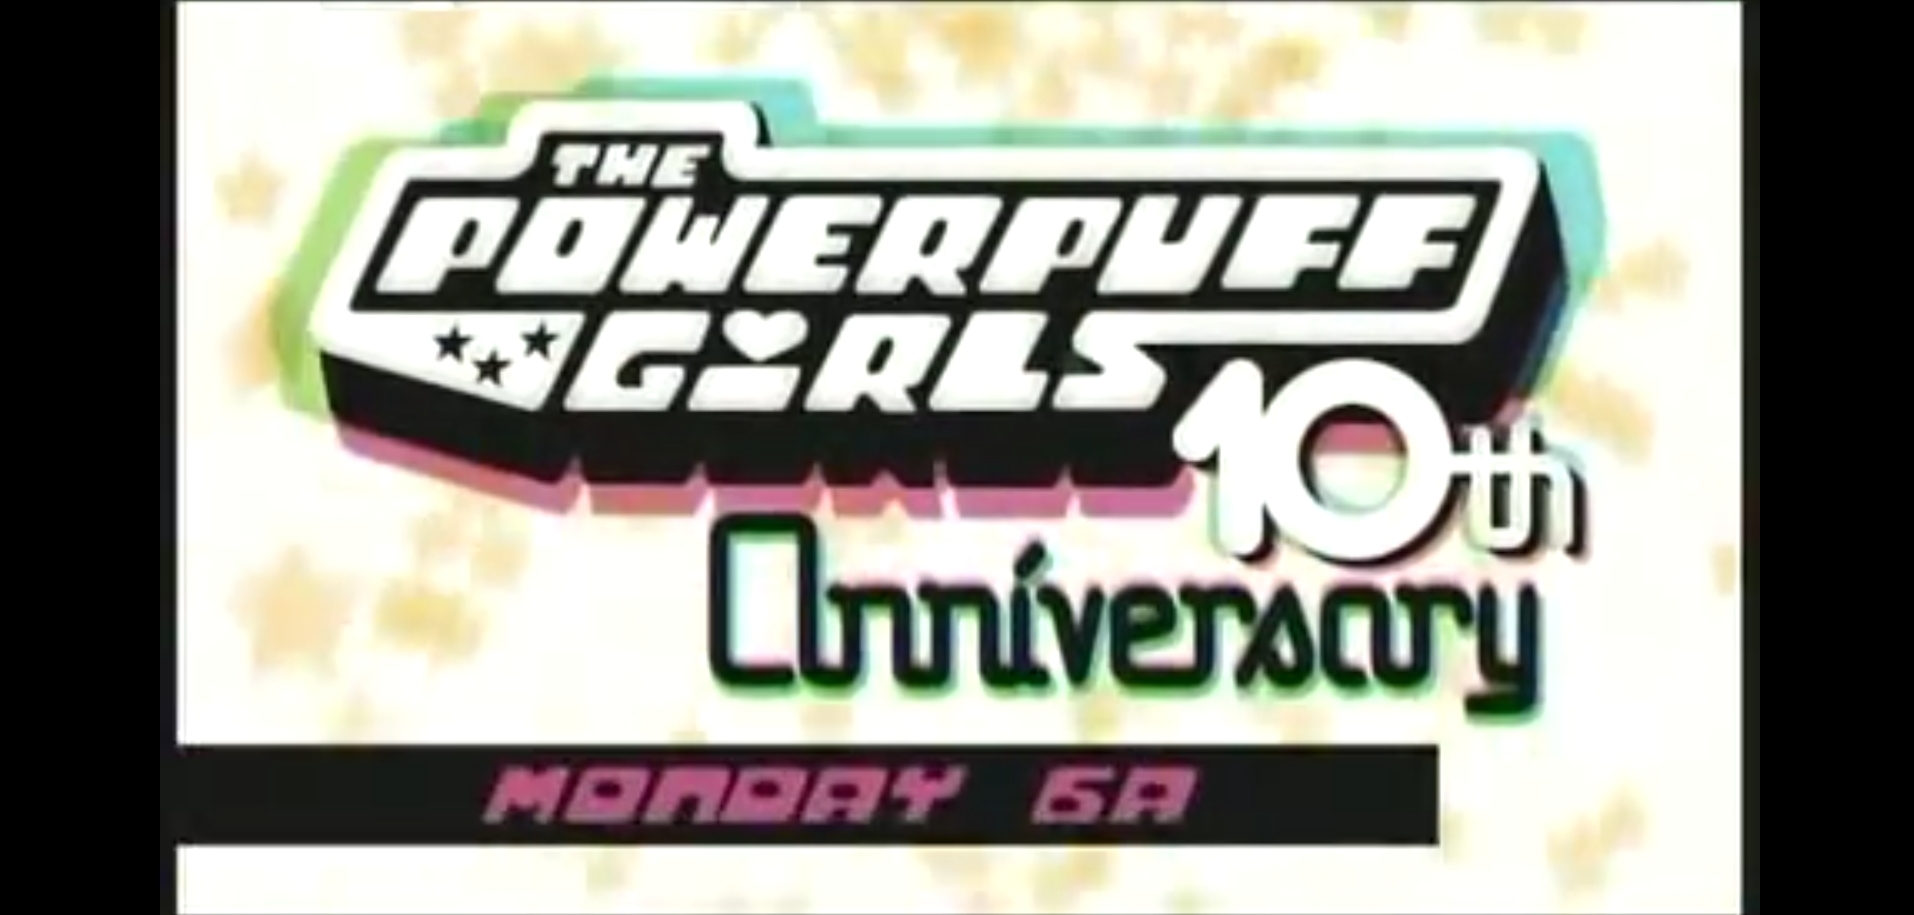 The Powerpuff Girls 10th Anniversary | The Cartoon Network Wiki